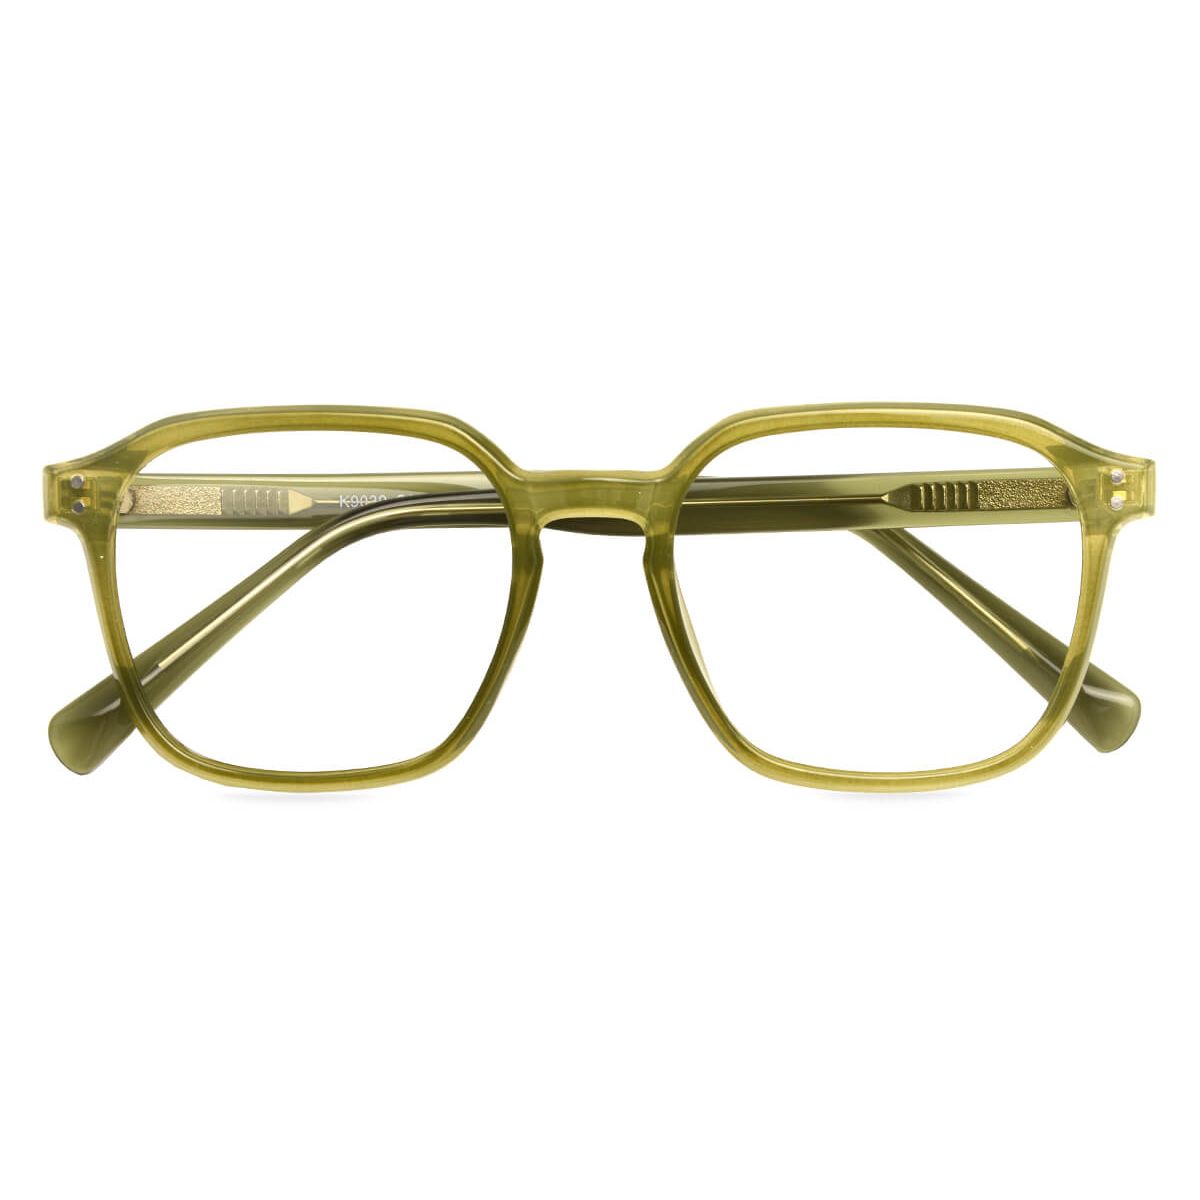 K9039 Square Green Eyeglasses Frames Leoptique